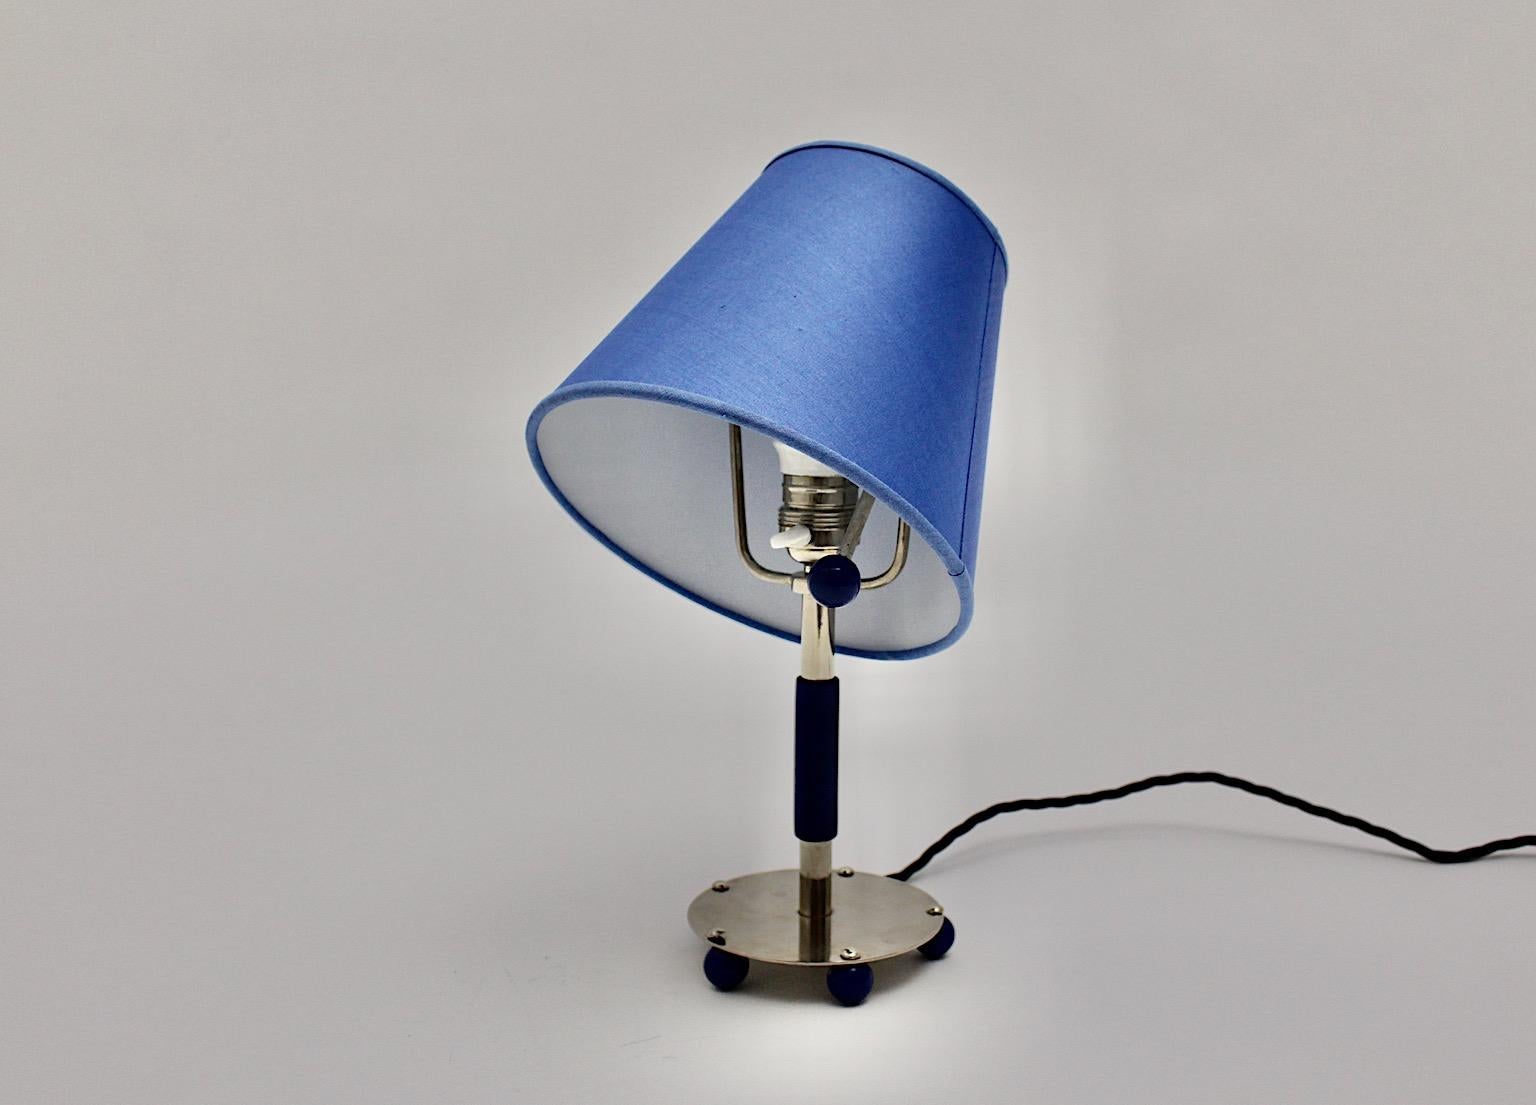 Blue Art Deco Vintage Chromed Metal Adjustable Table Lamp, 1930, Germany For Sale 1